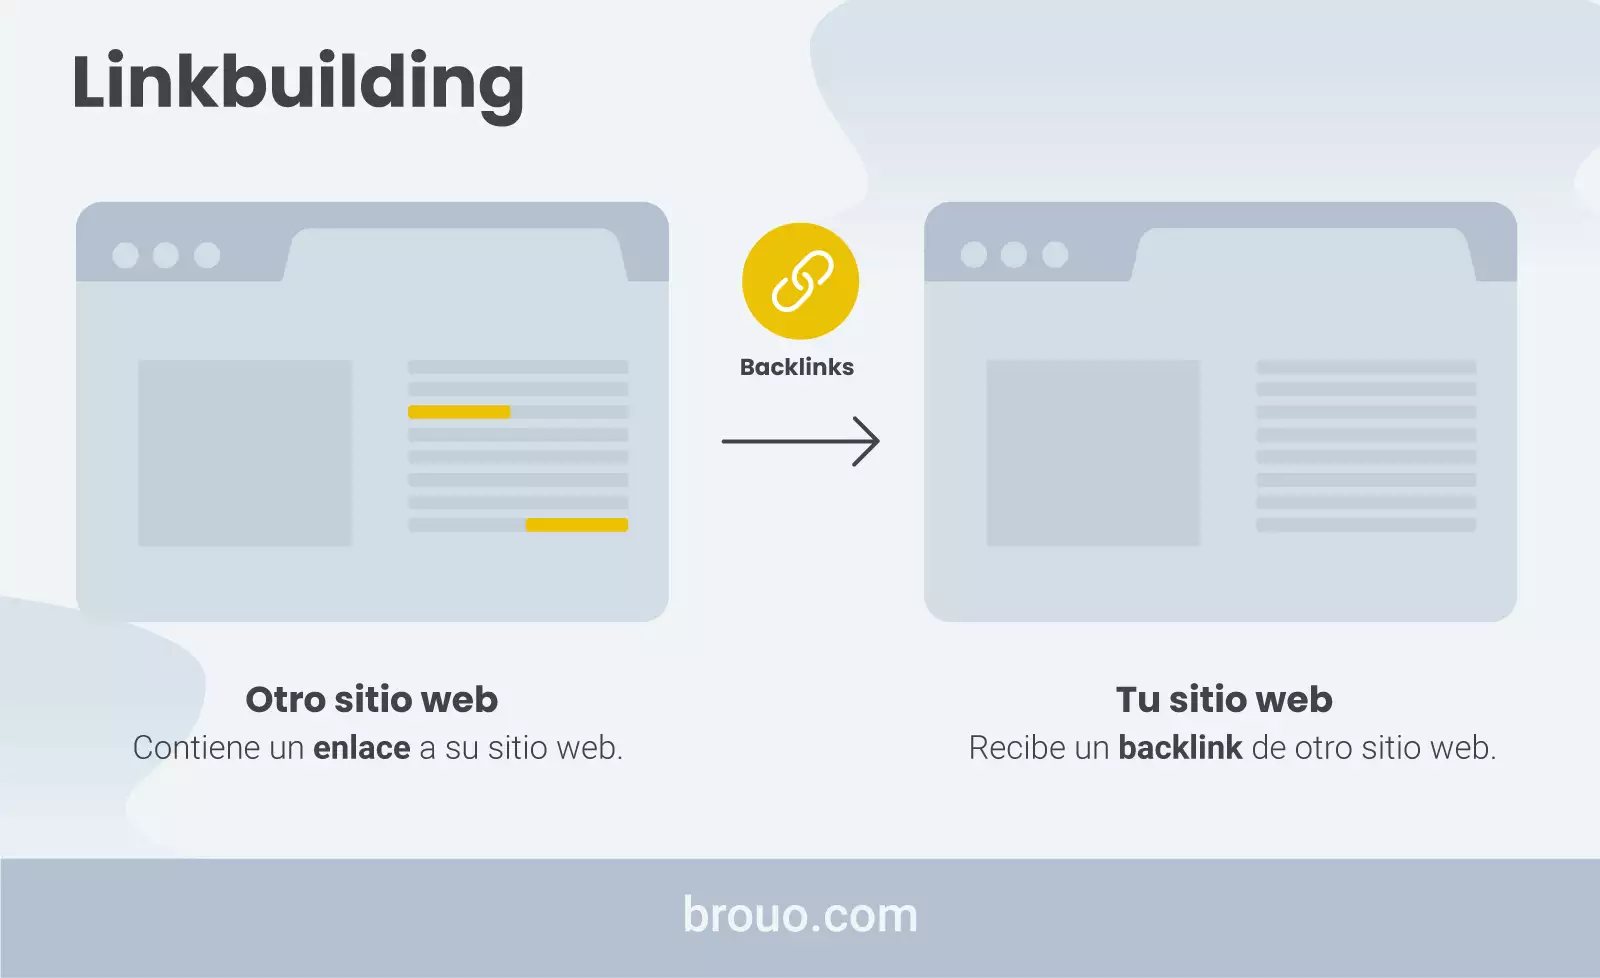 linkbuilding para blogs, backlinks